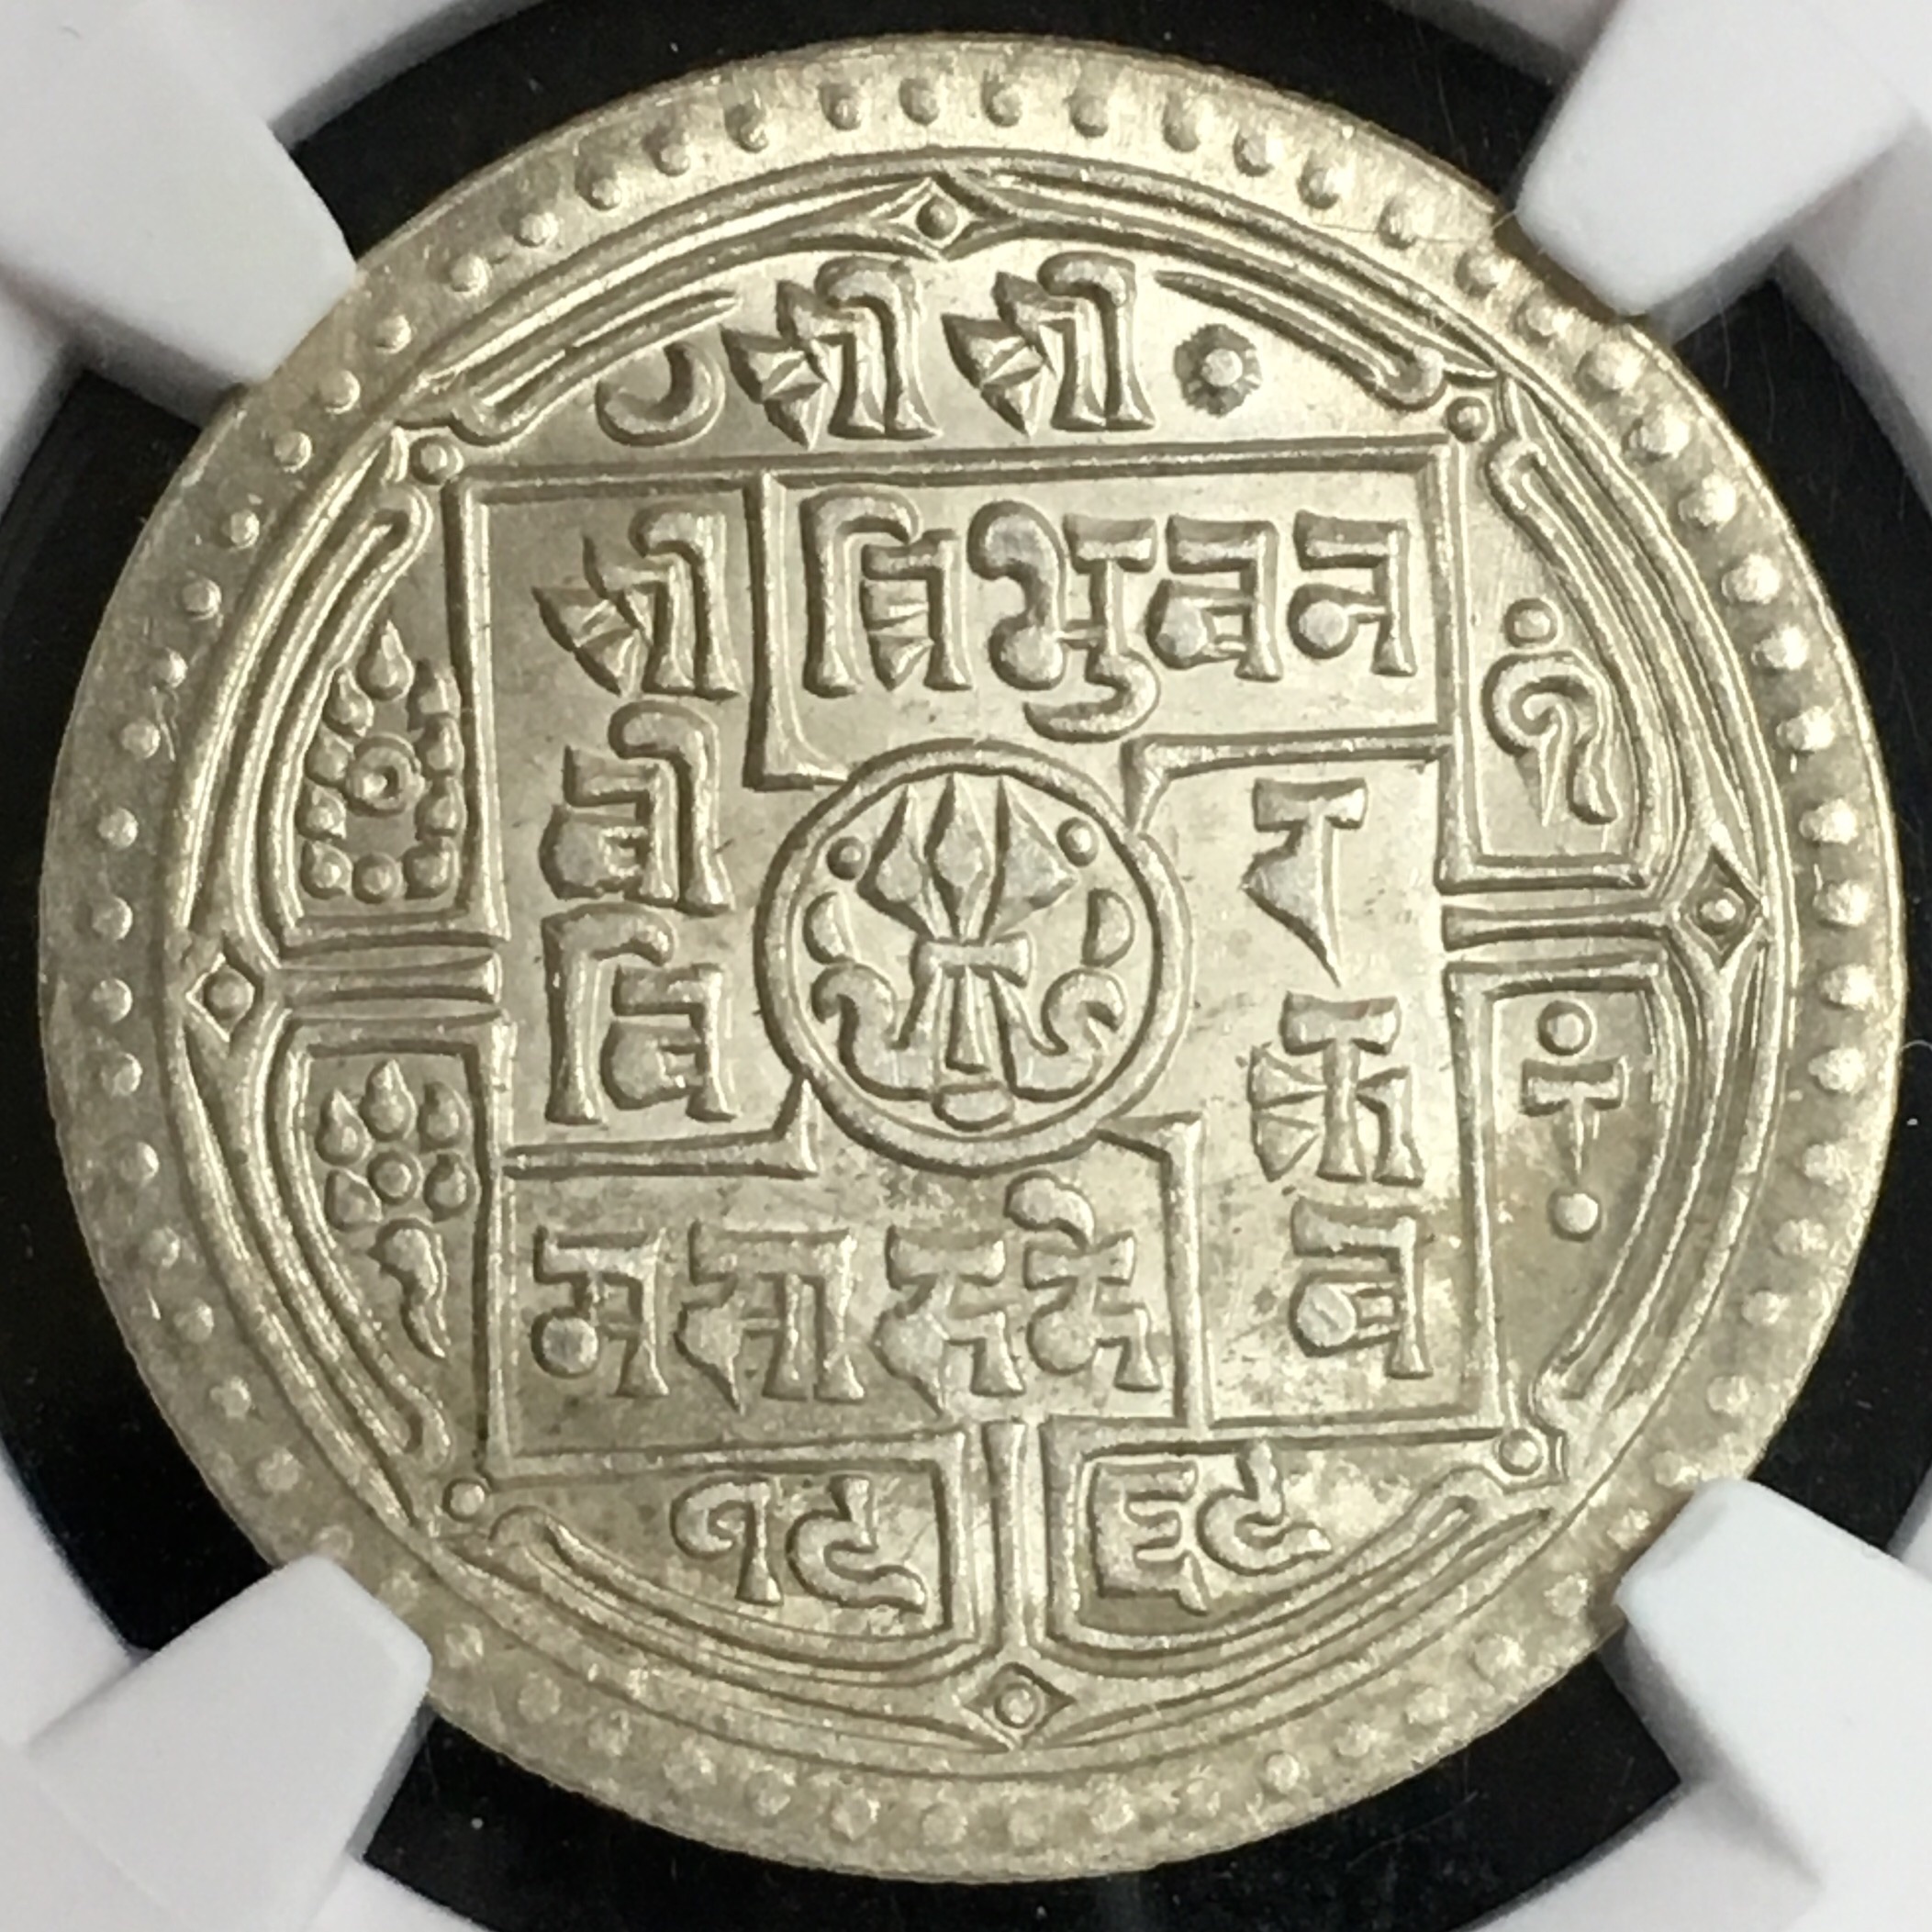 尼泊尔莫哈银币图片